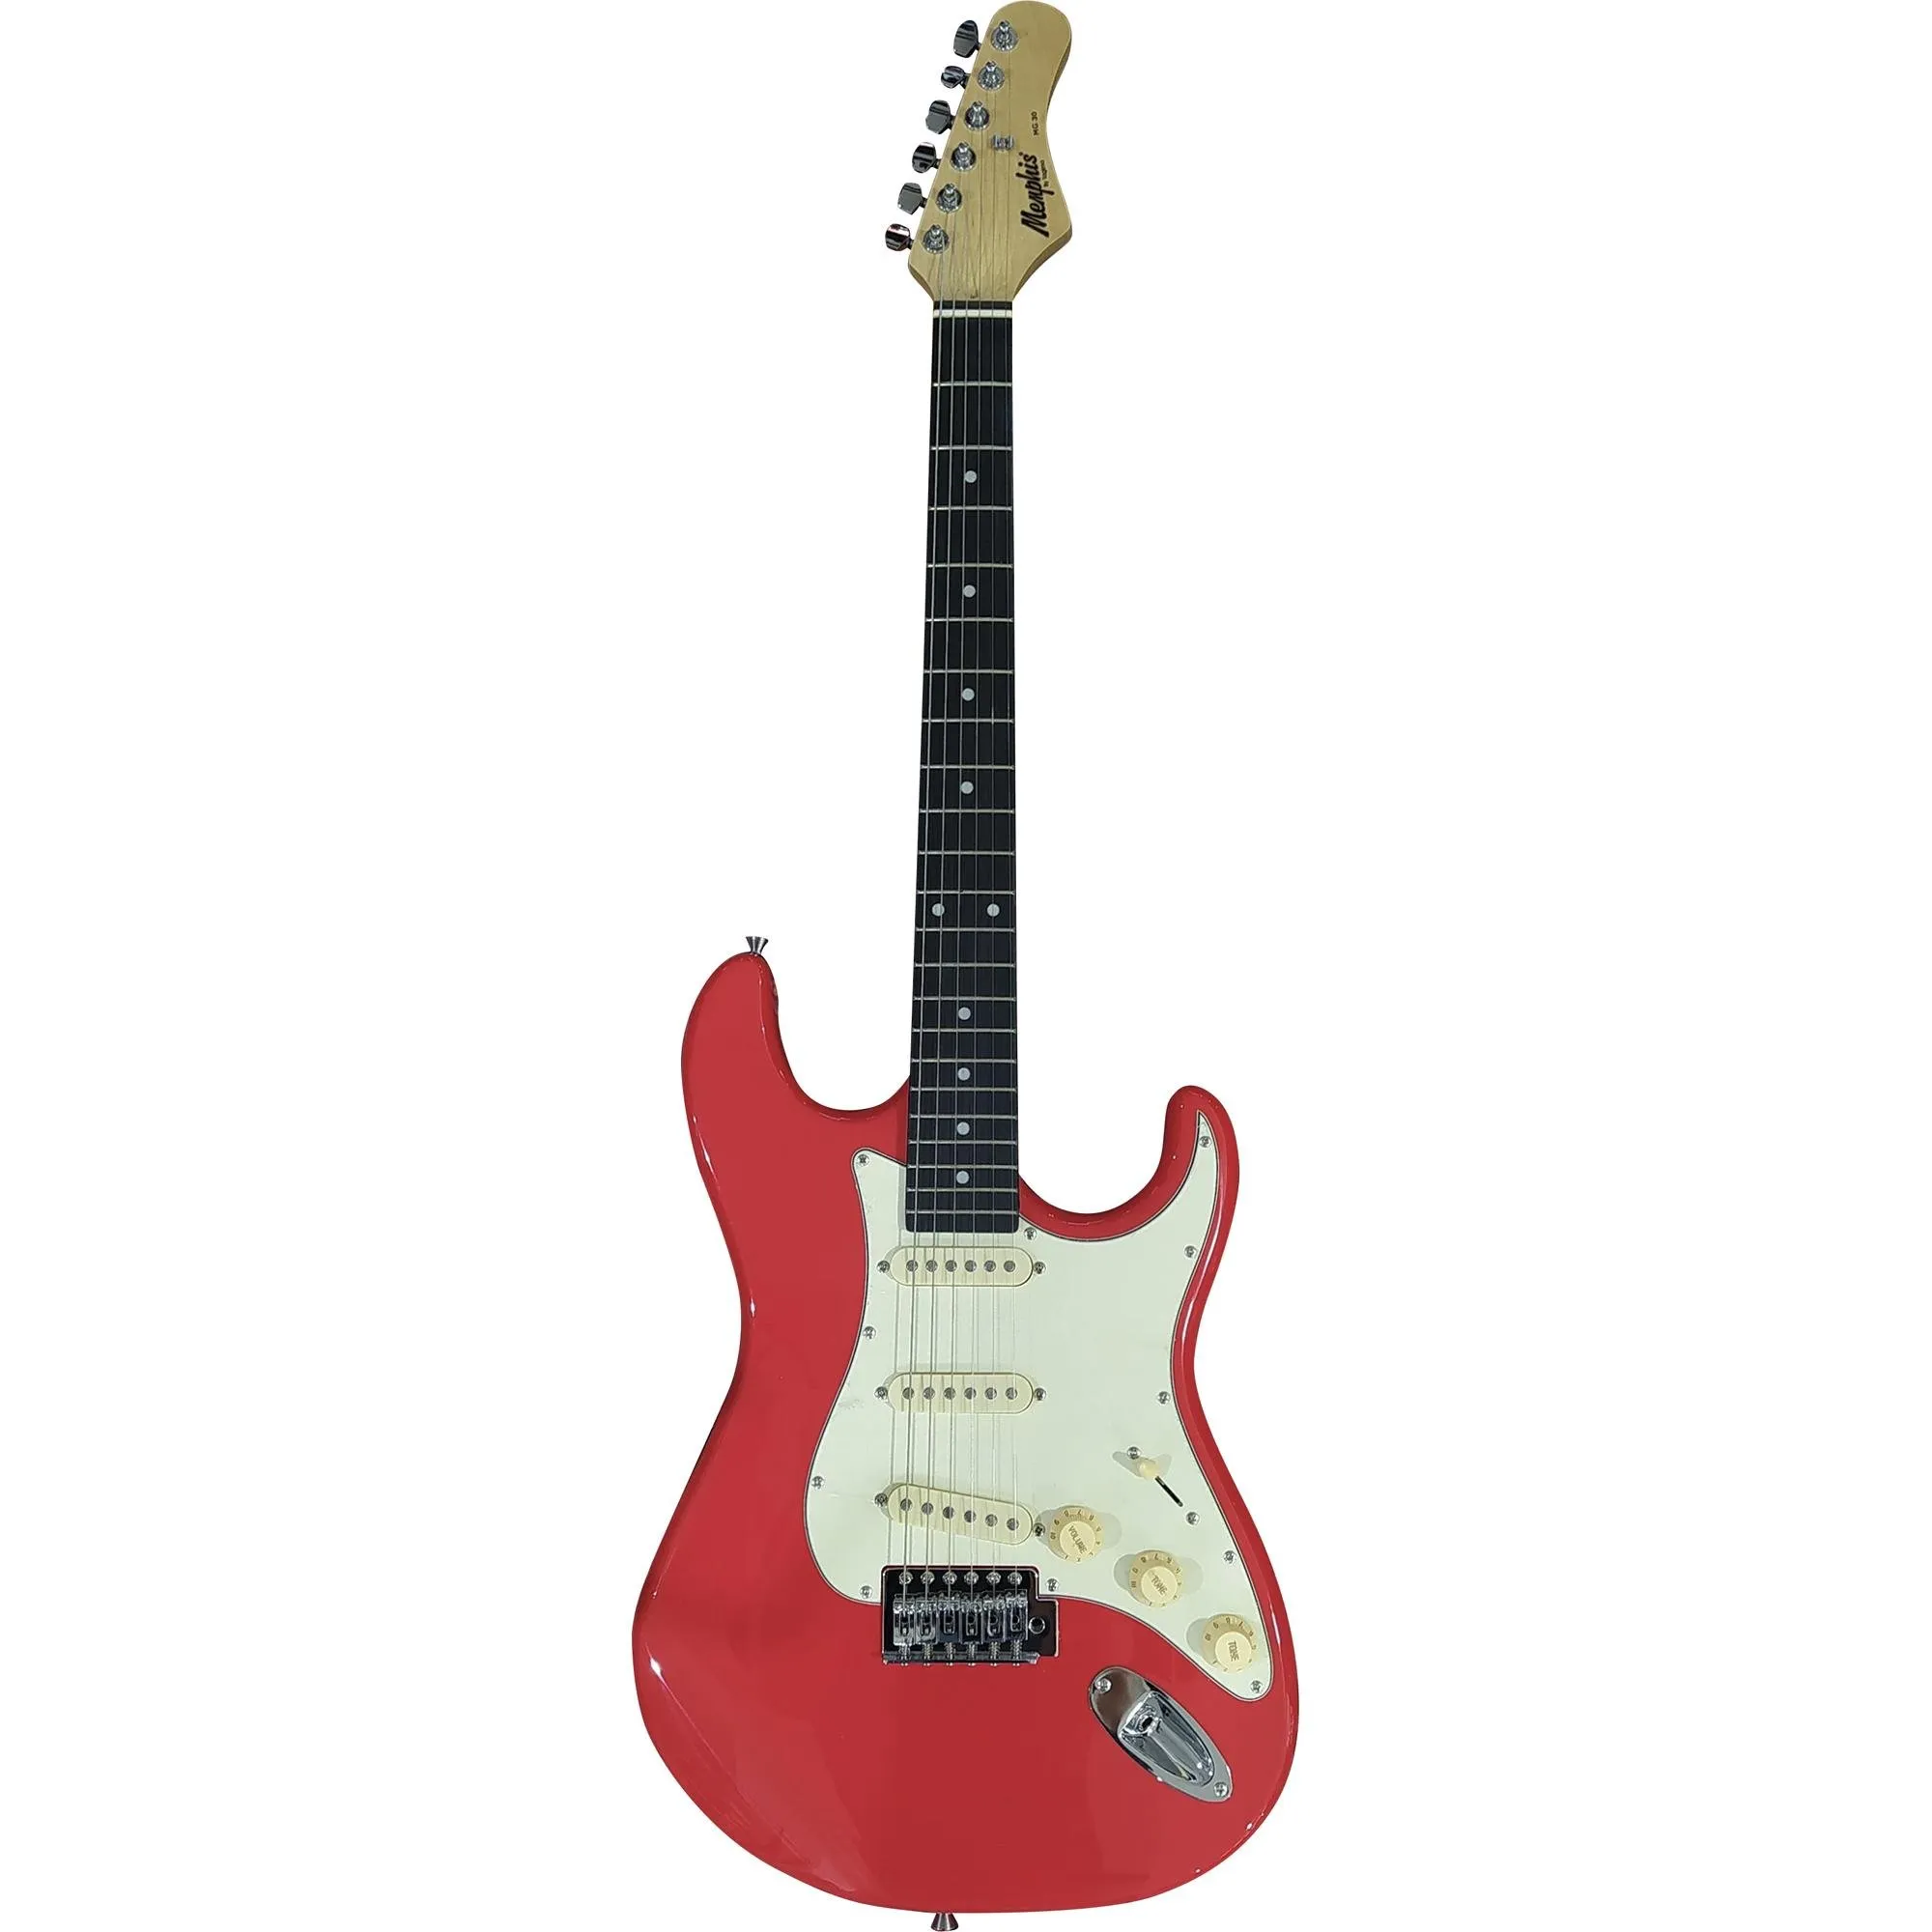 Guitarra Tagima MG30 Memphis Fiesta Red por 799,99 à vista no boleto/pix ou parcele em até 10x sem juros. Compre na loja Mundomax!